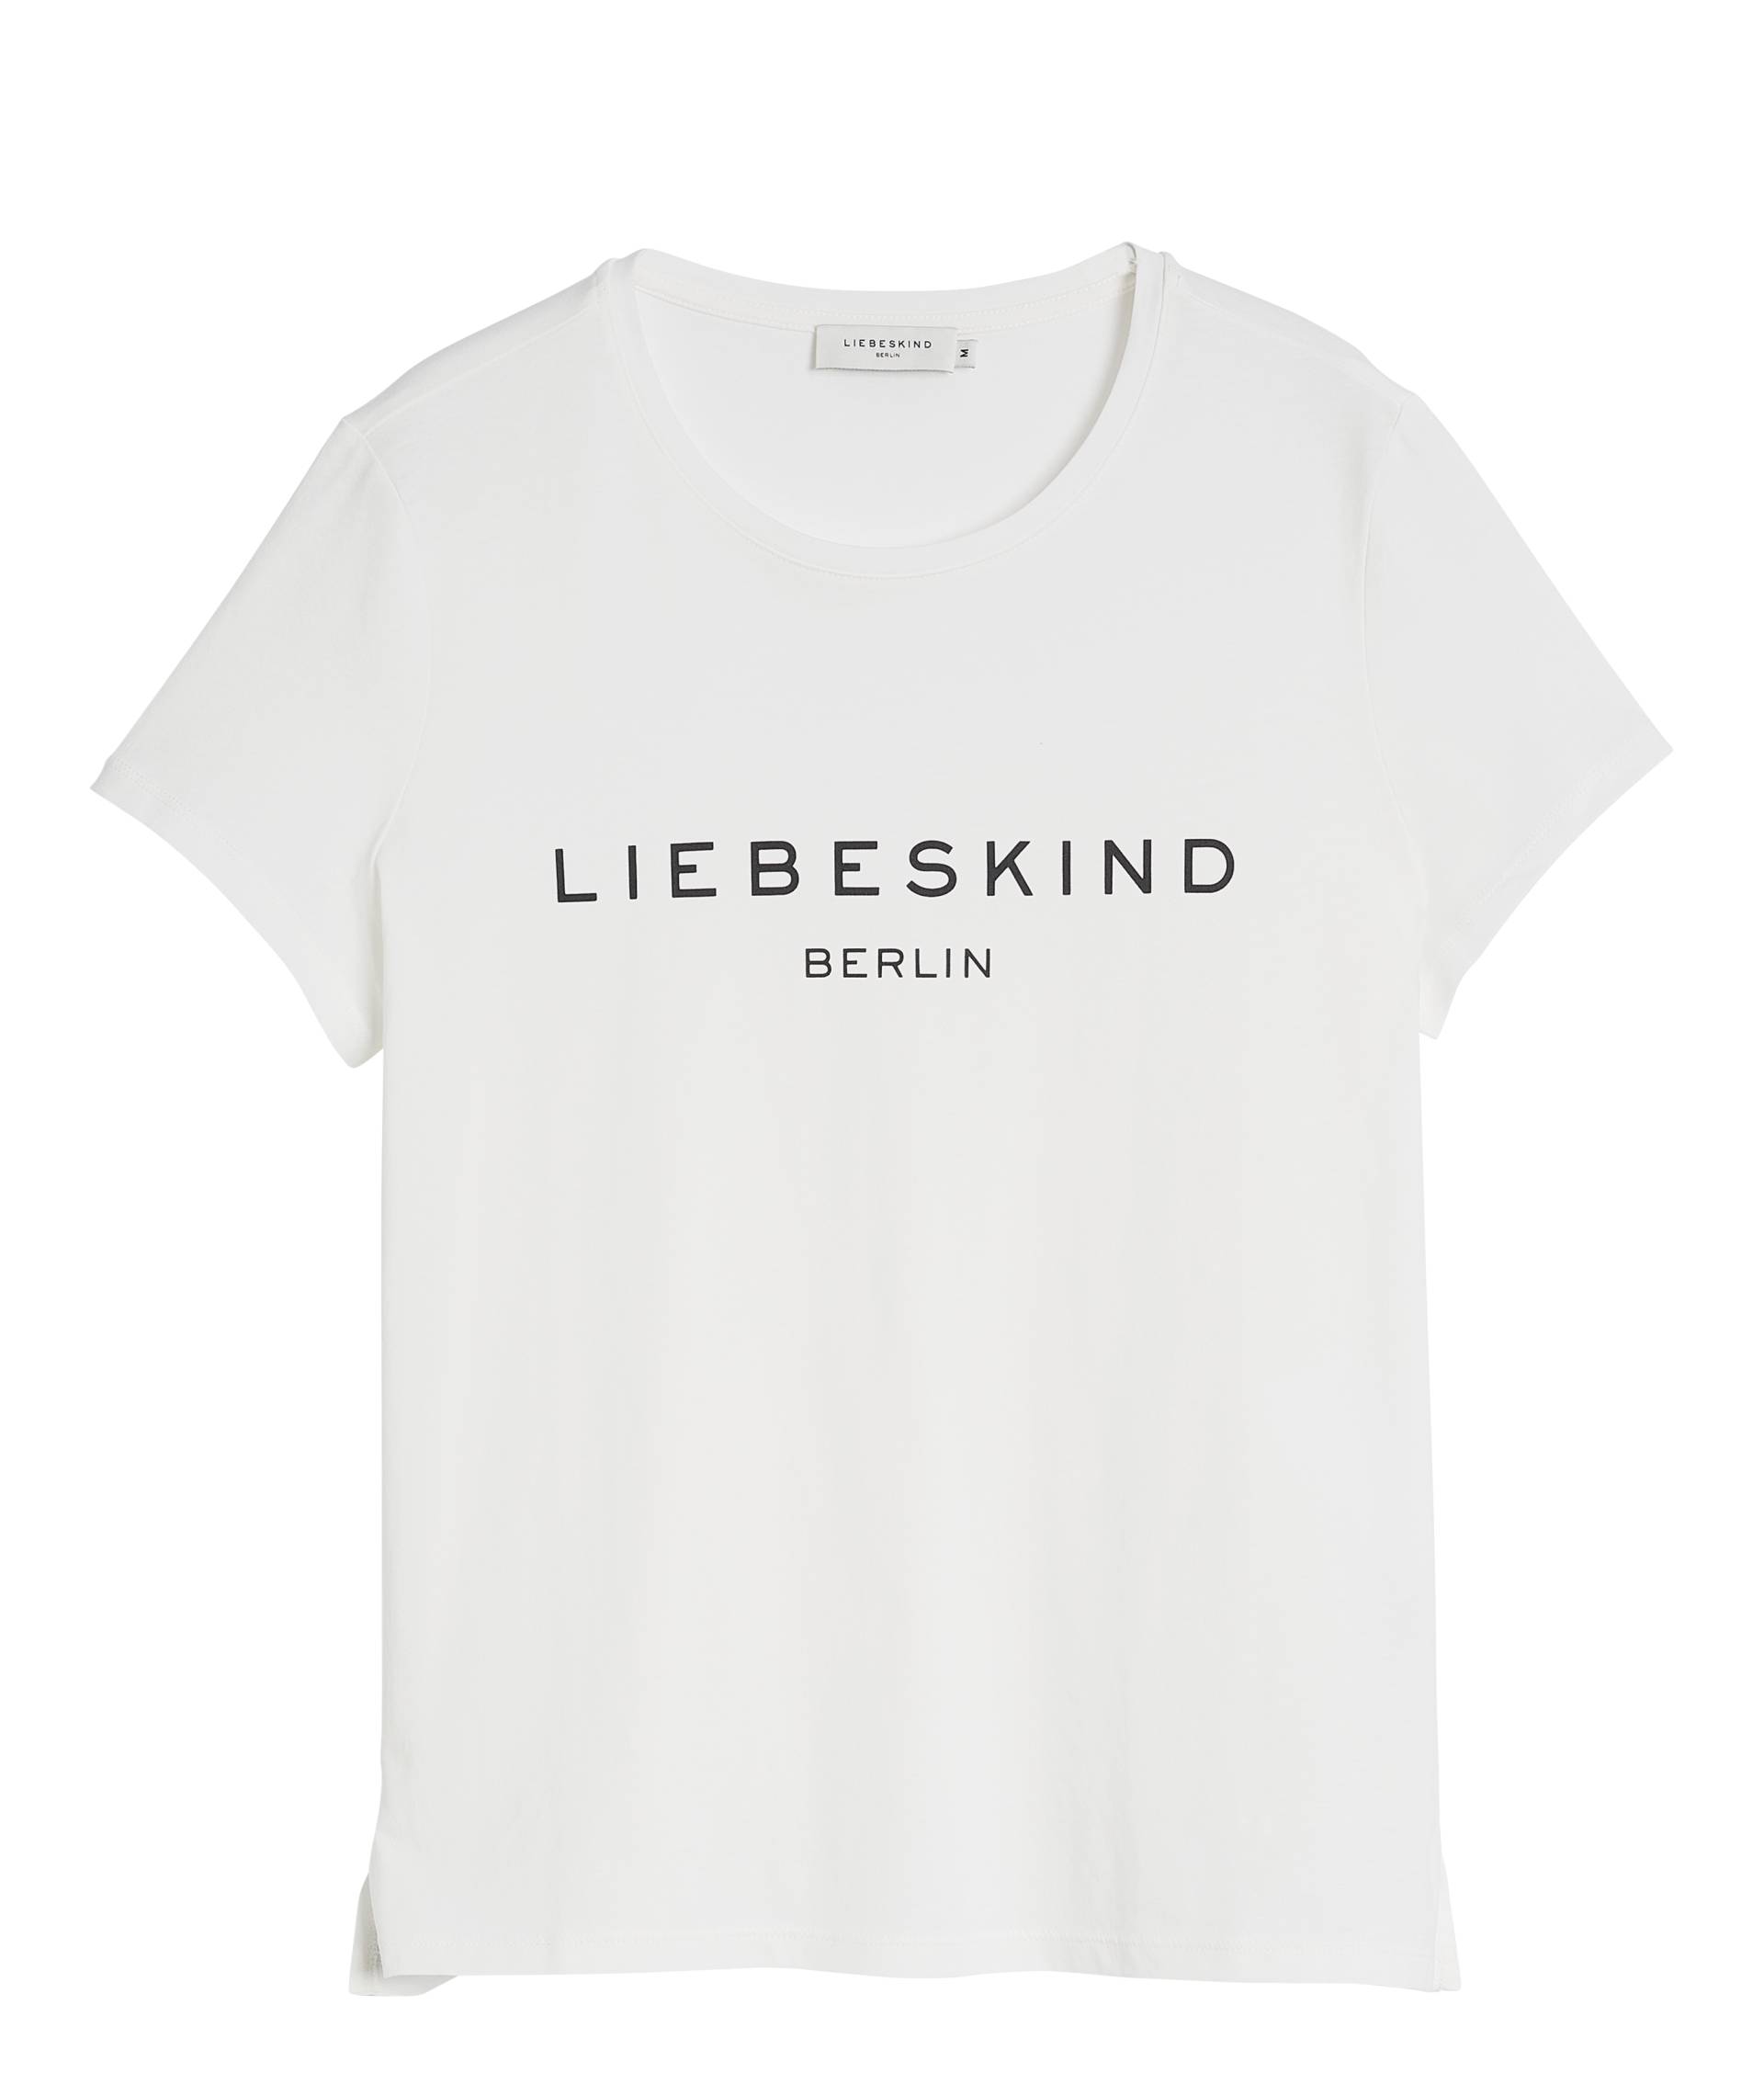 T-Shirt von liebeskind berlin